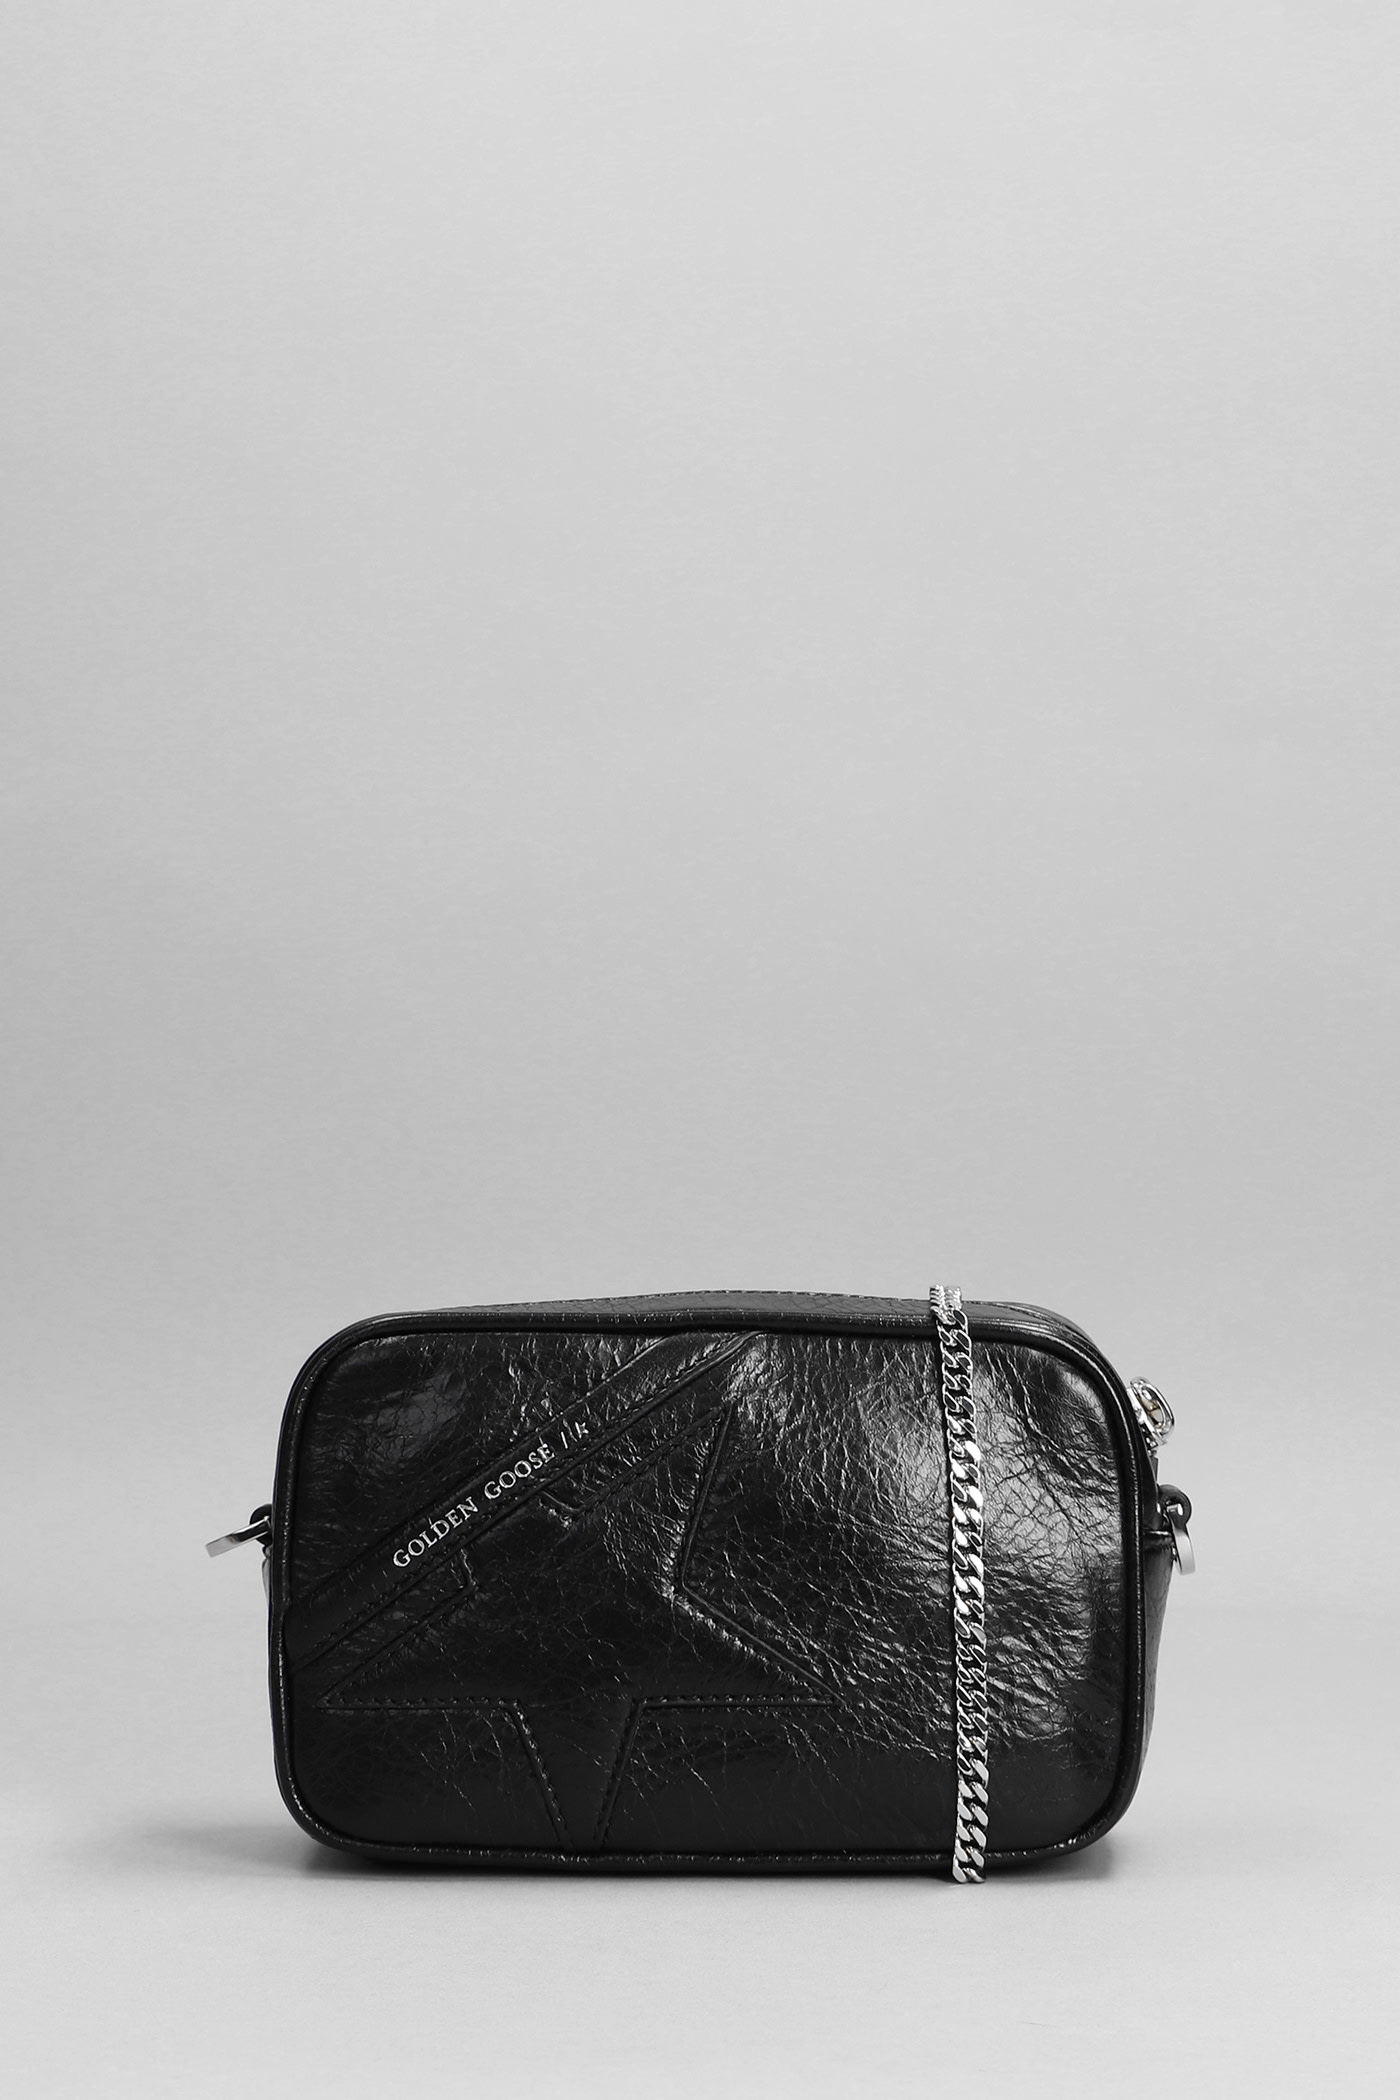 Golden Goose Mini Star Bag Shoulder Bag In Black Leather